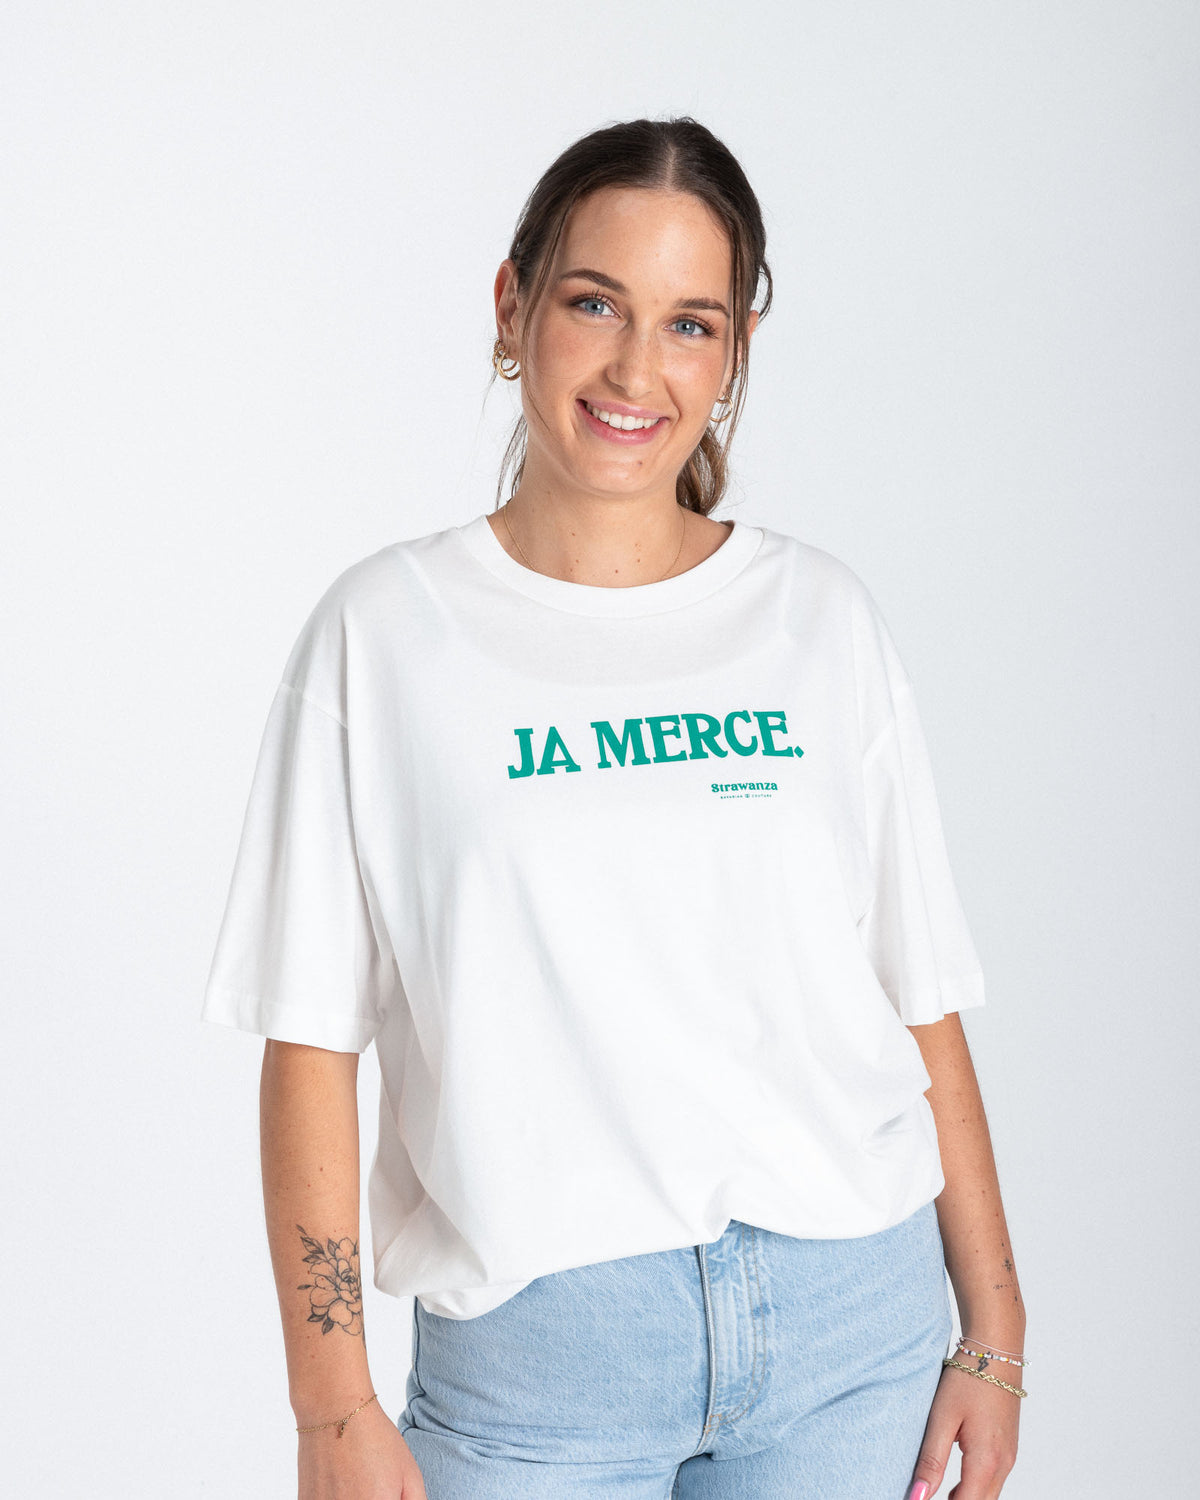 Ein weibliches Model trägt ein weißes T-Shirt mit einem dunkelgrünen, bedruckten "JA MERCE" Schriftzug auf der Höhe der Brust.